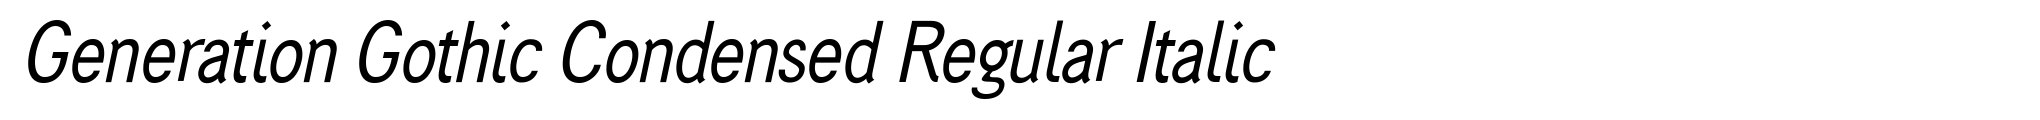 Generation Gothic Condensed Regular Italic image